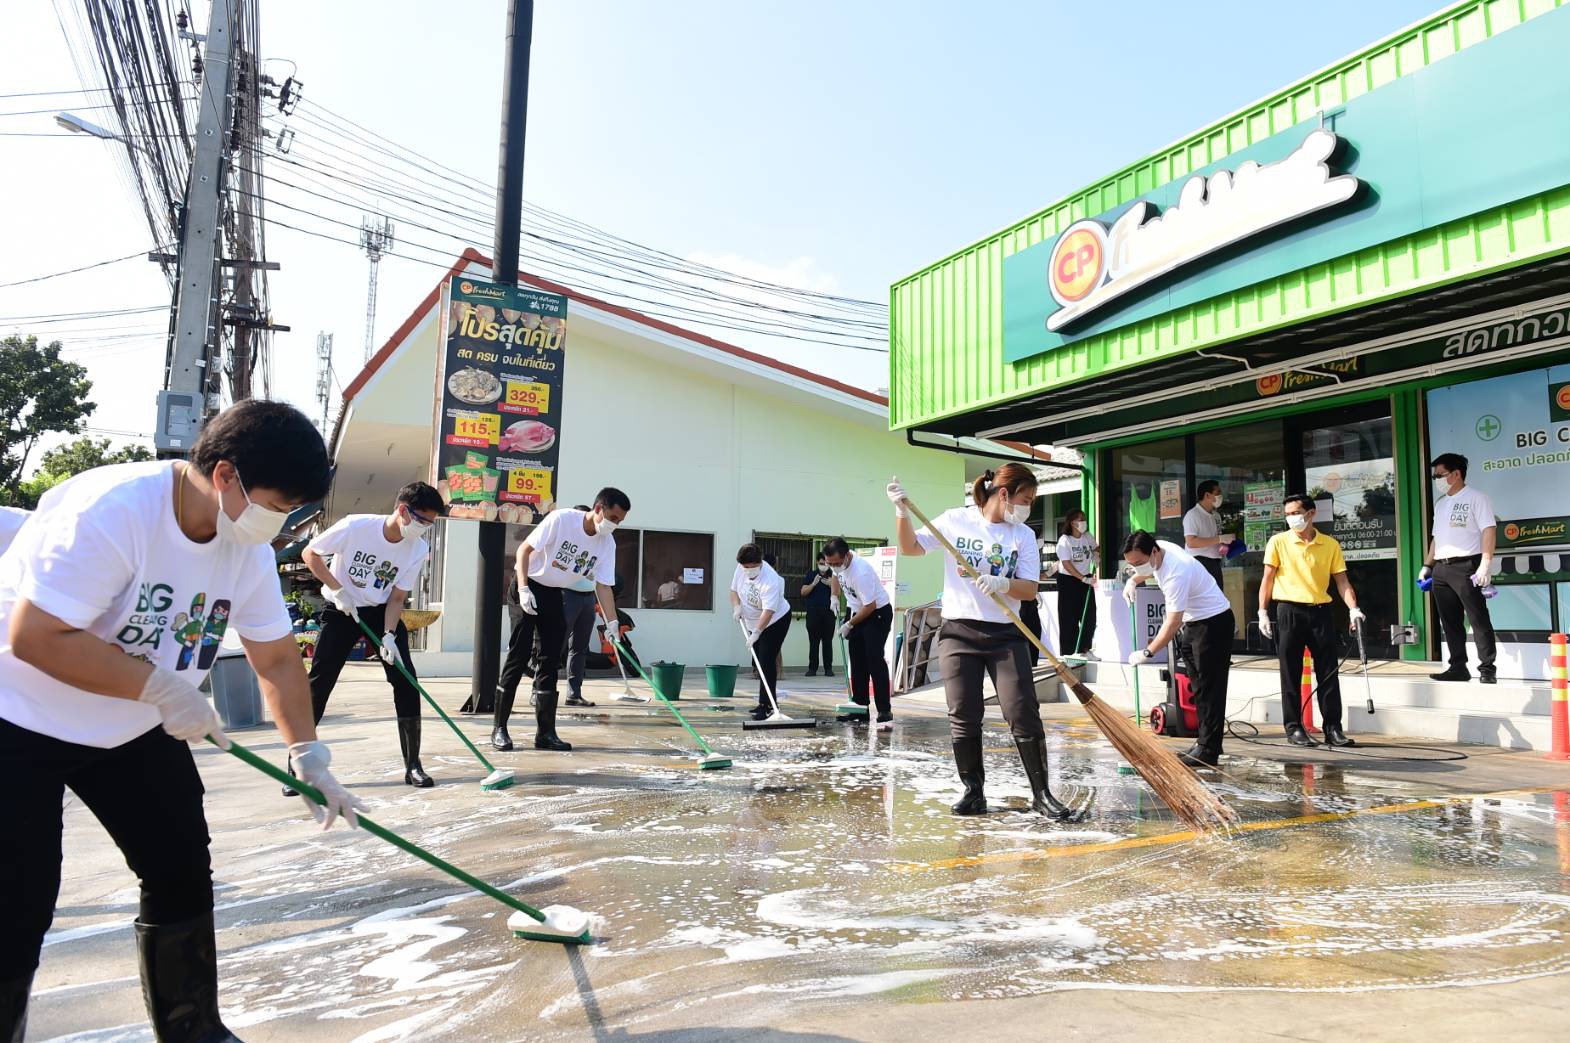 'ซีพี เฟรชมาร์ท' Big Cleaning Day ทุกสาขาทั่วไทย เพิ่มความมั่นใจลูกค้า สะอาด ปลอดภัย รวมใจต้านวิกฤตโควิด-19